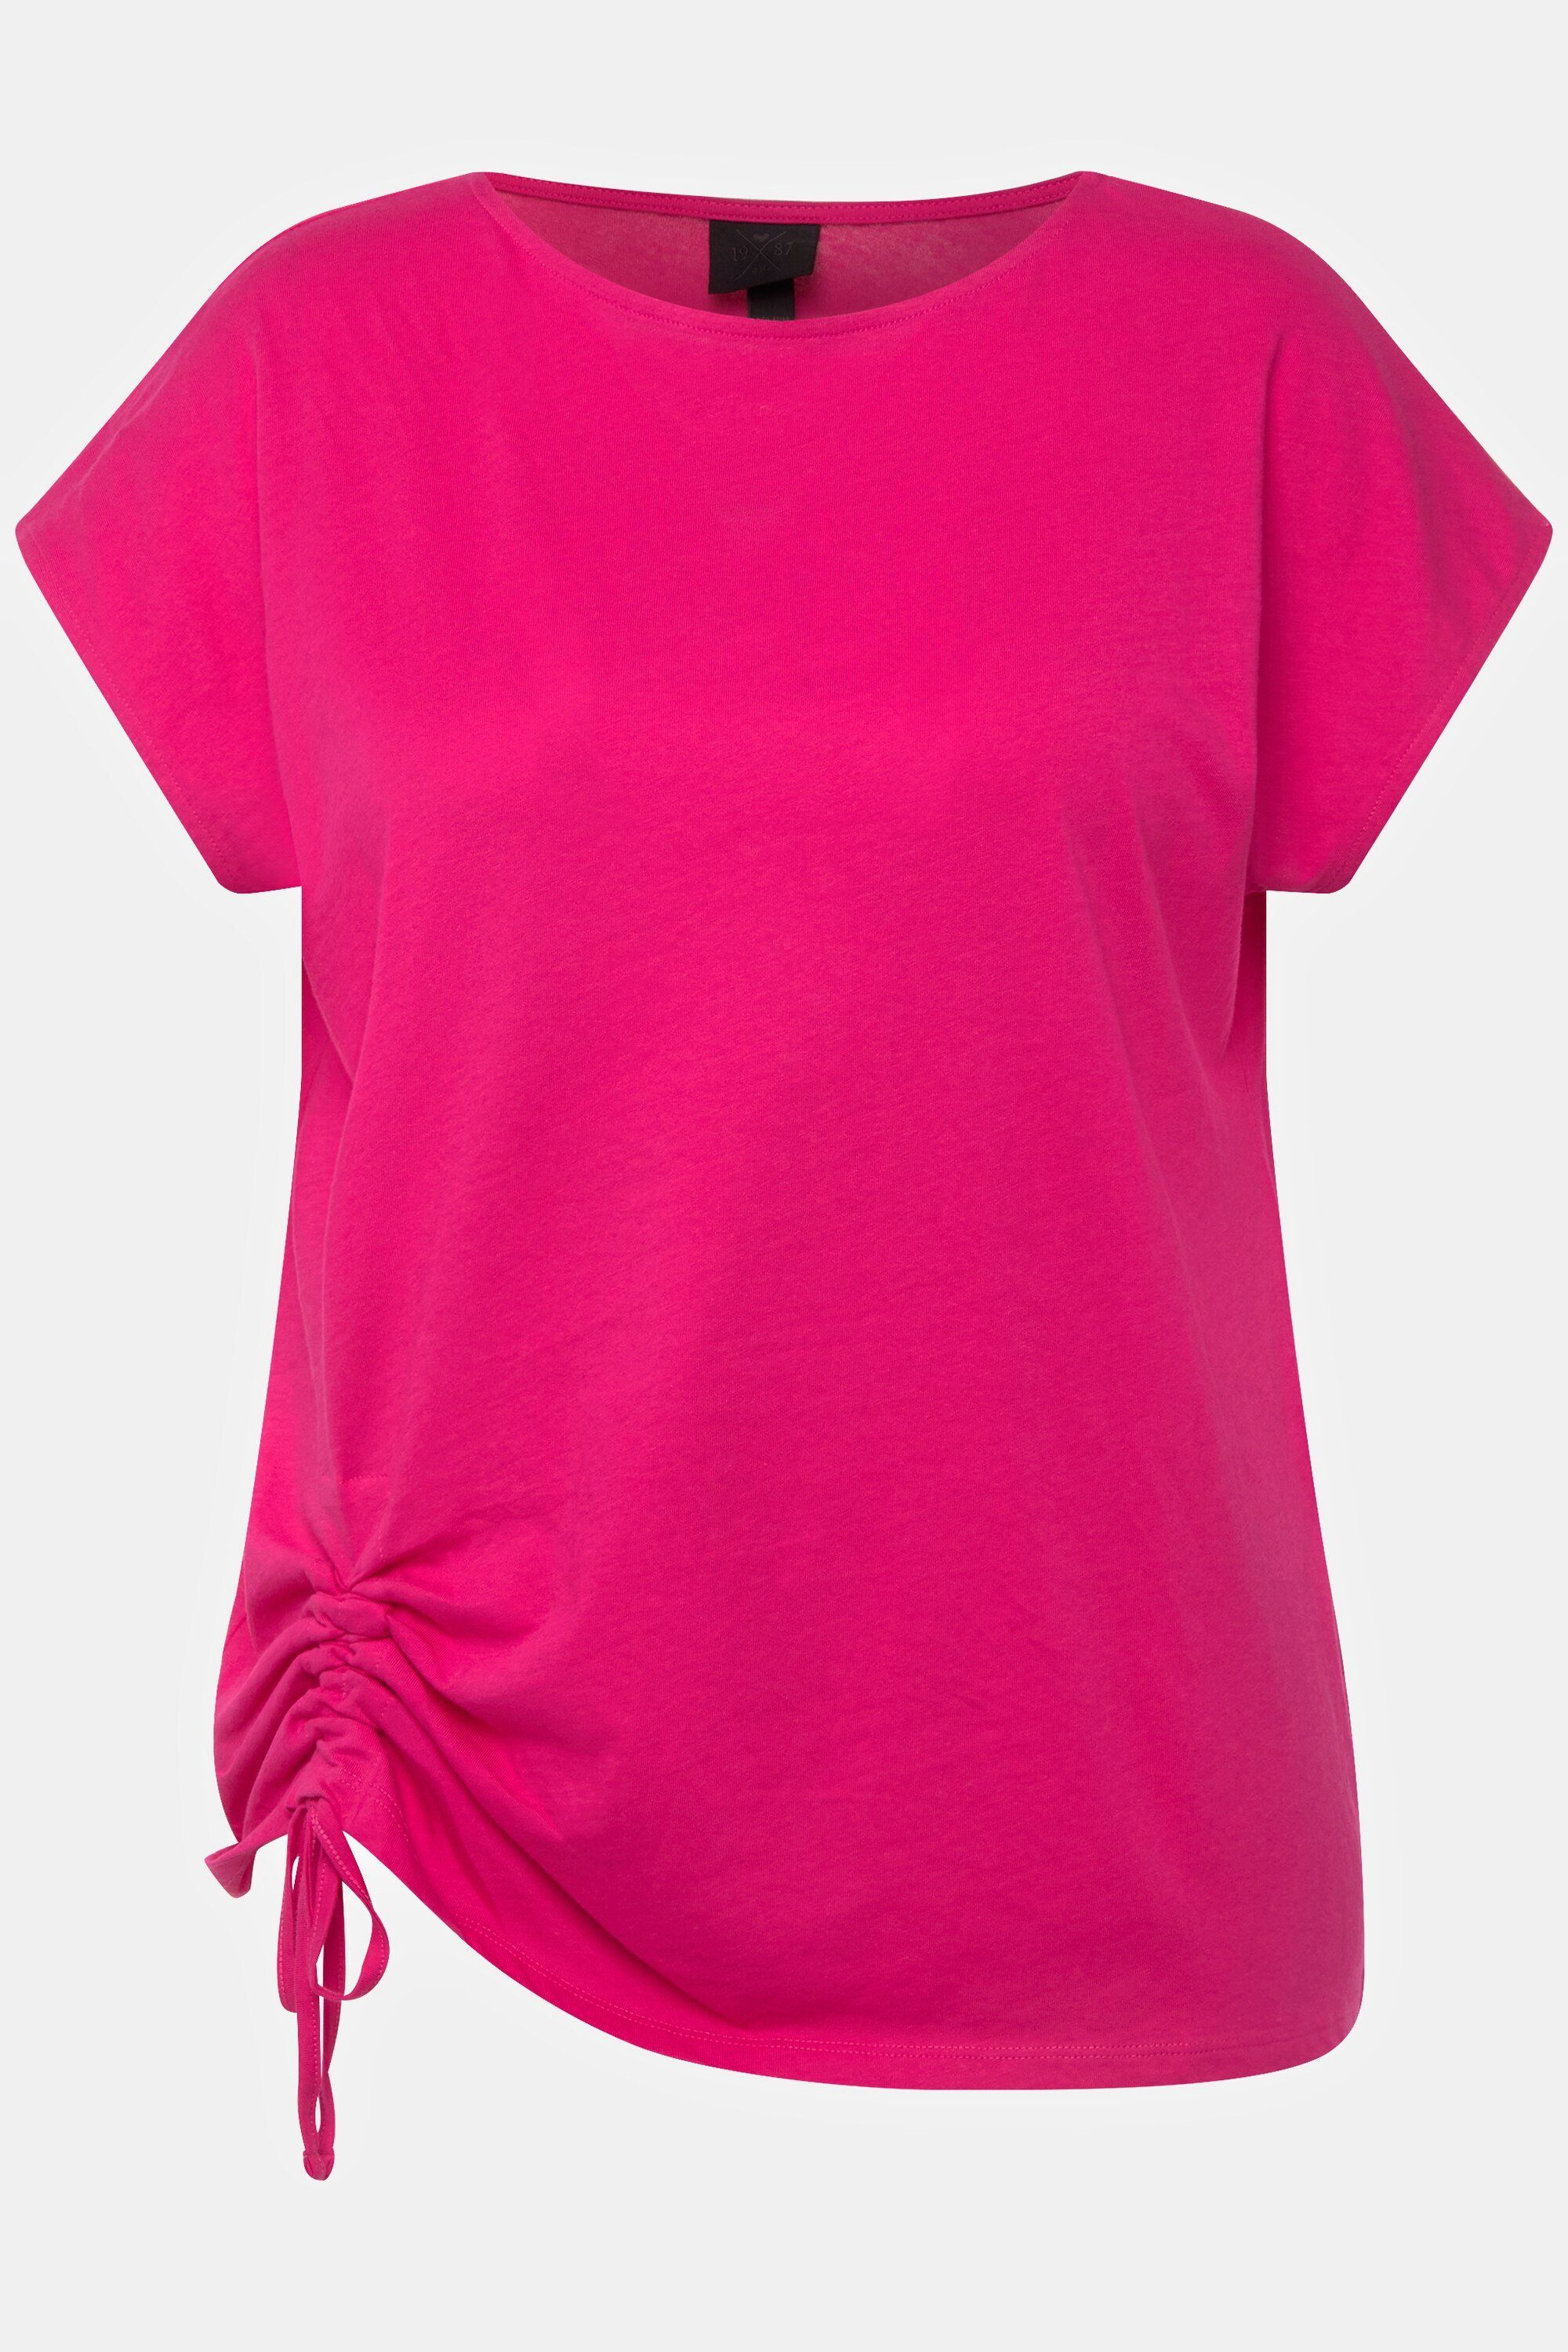 Ulla Popken Rundhalsshirt T-Shirt Halbarm Saum-Raffband pink Rundhals